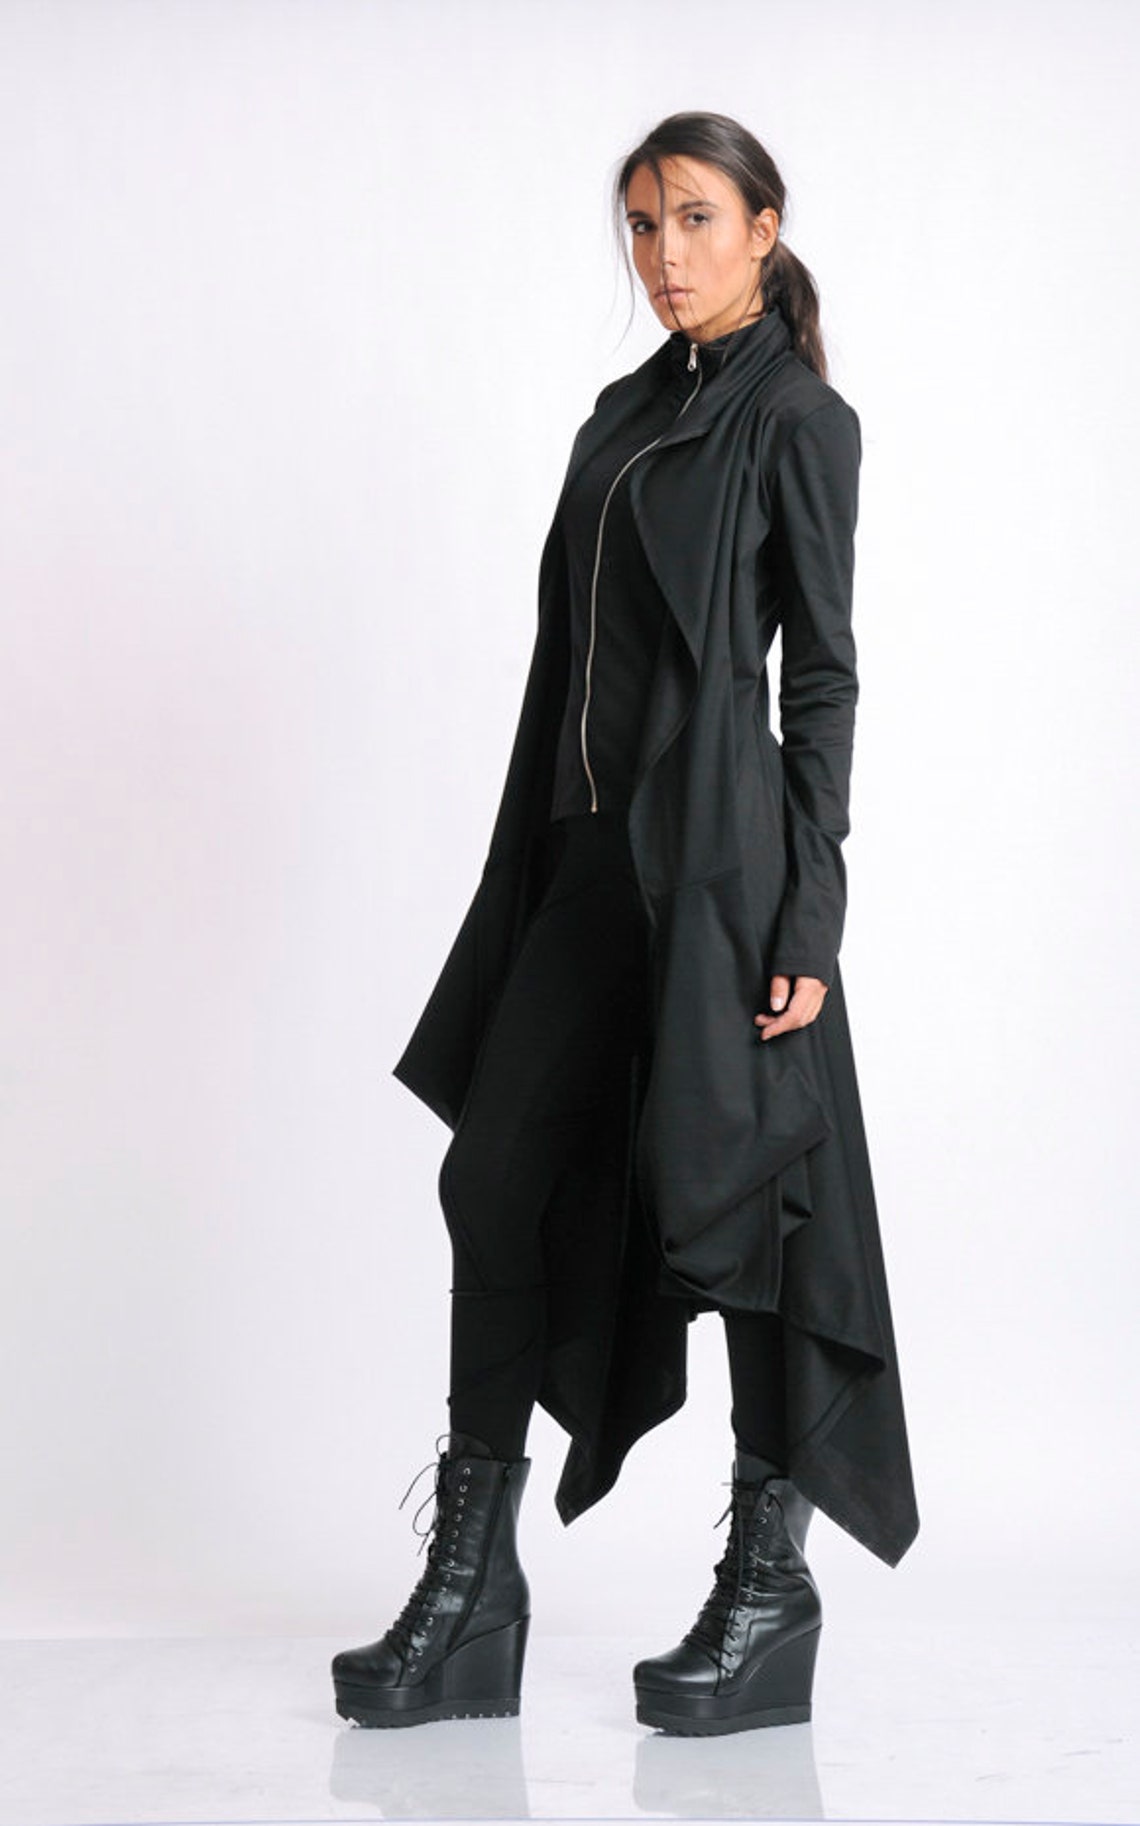 Black Asymmetric Coat/extravagant Loose Jacket/black Oversize - Etsy